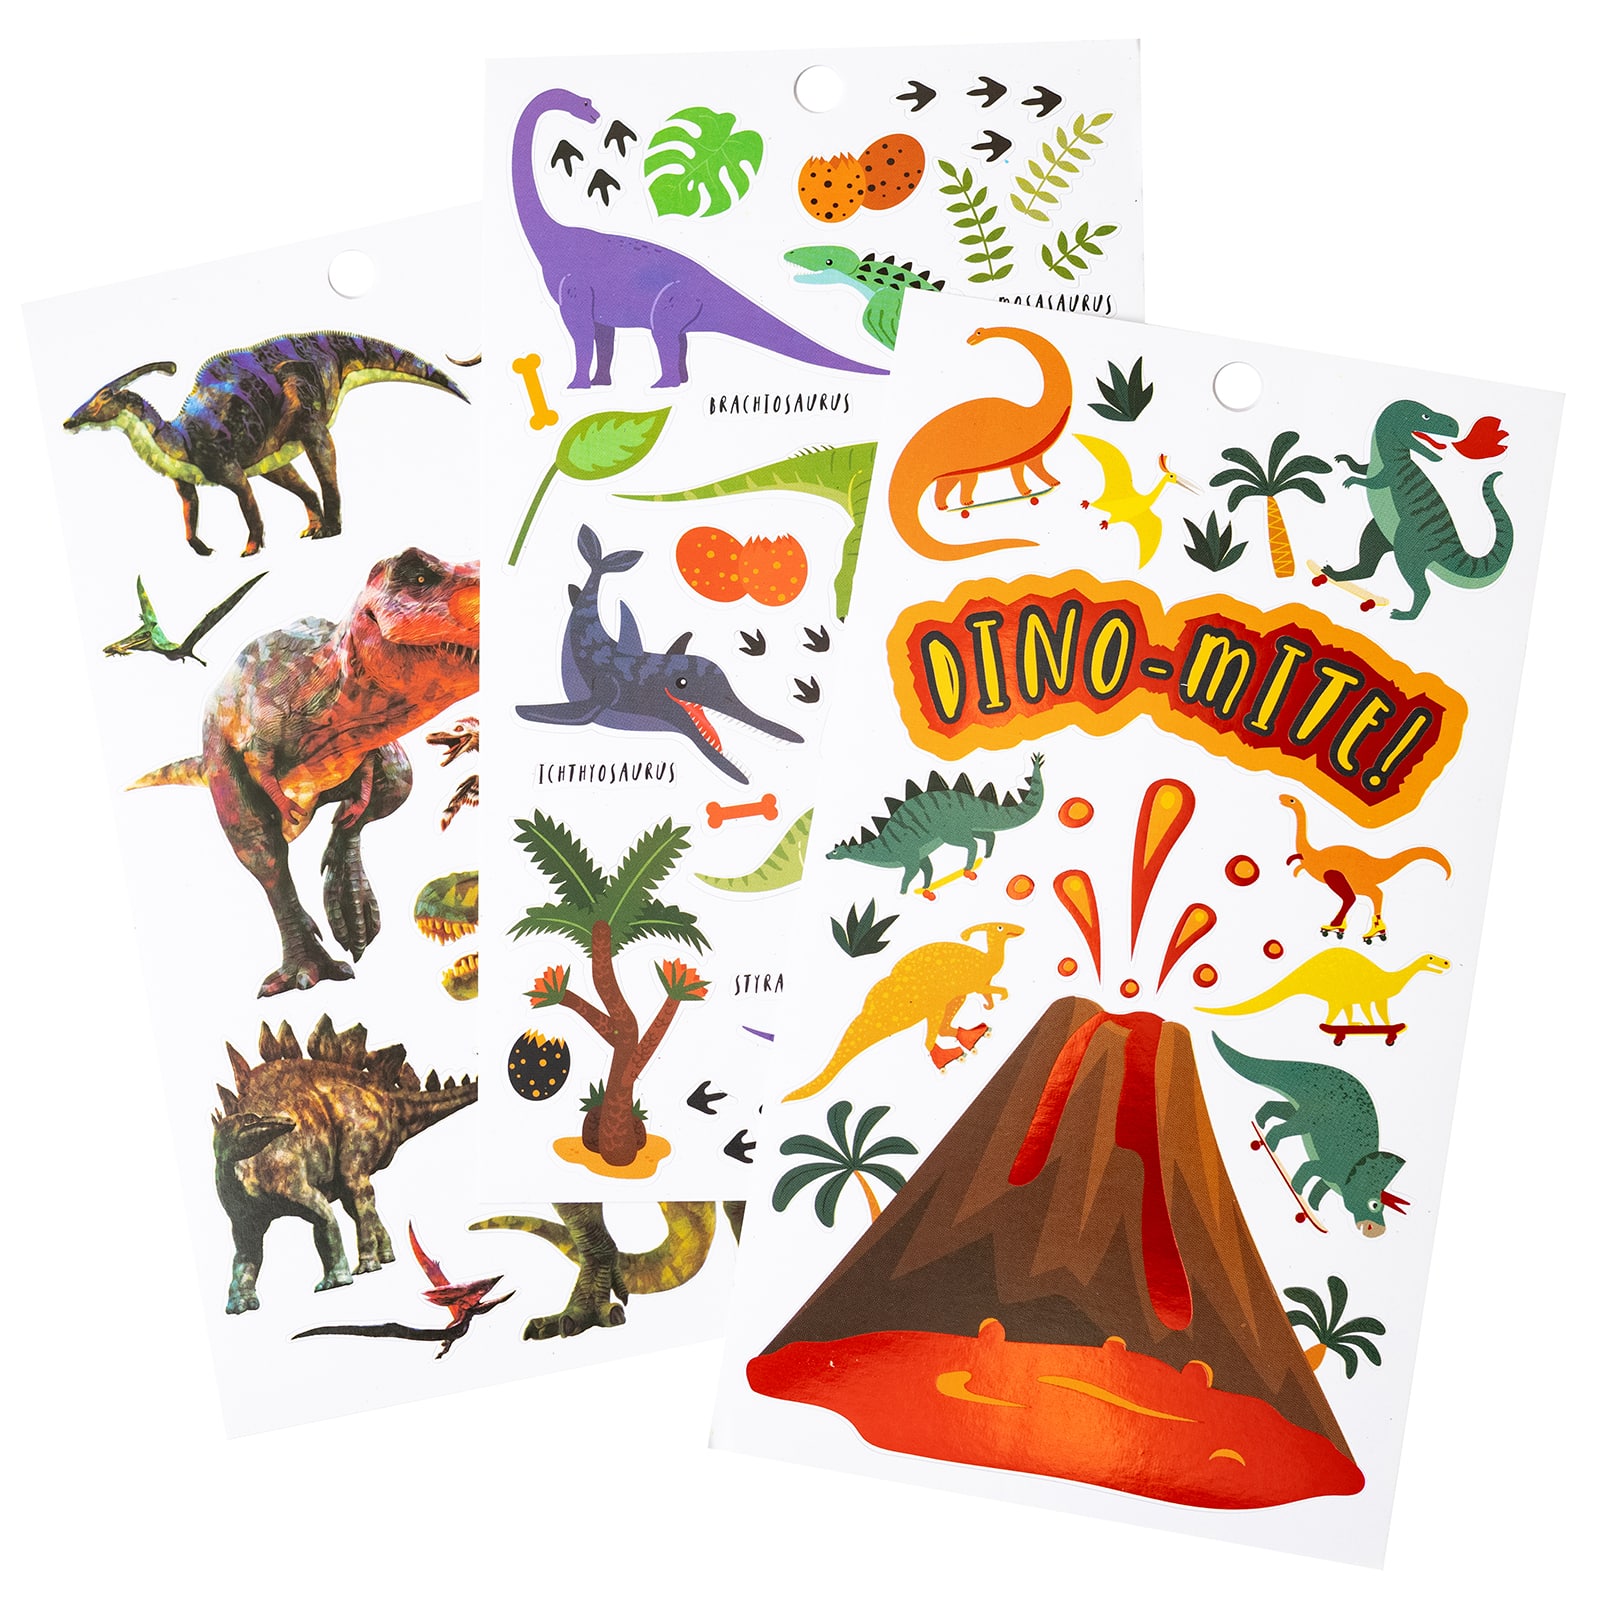 Stickers Stickers Dinosaurs, Dinosaur Sticker Sheets